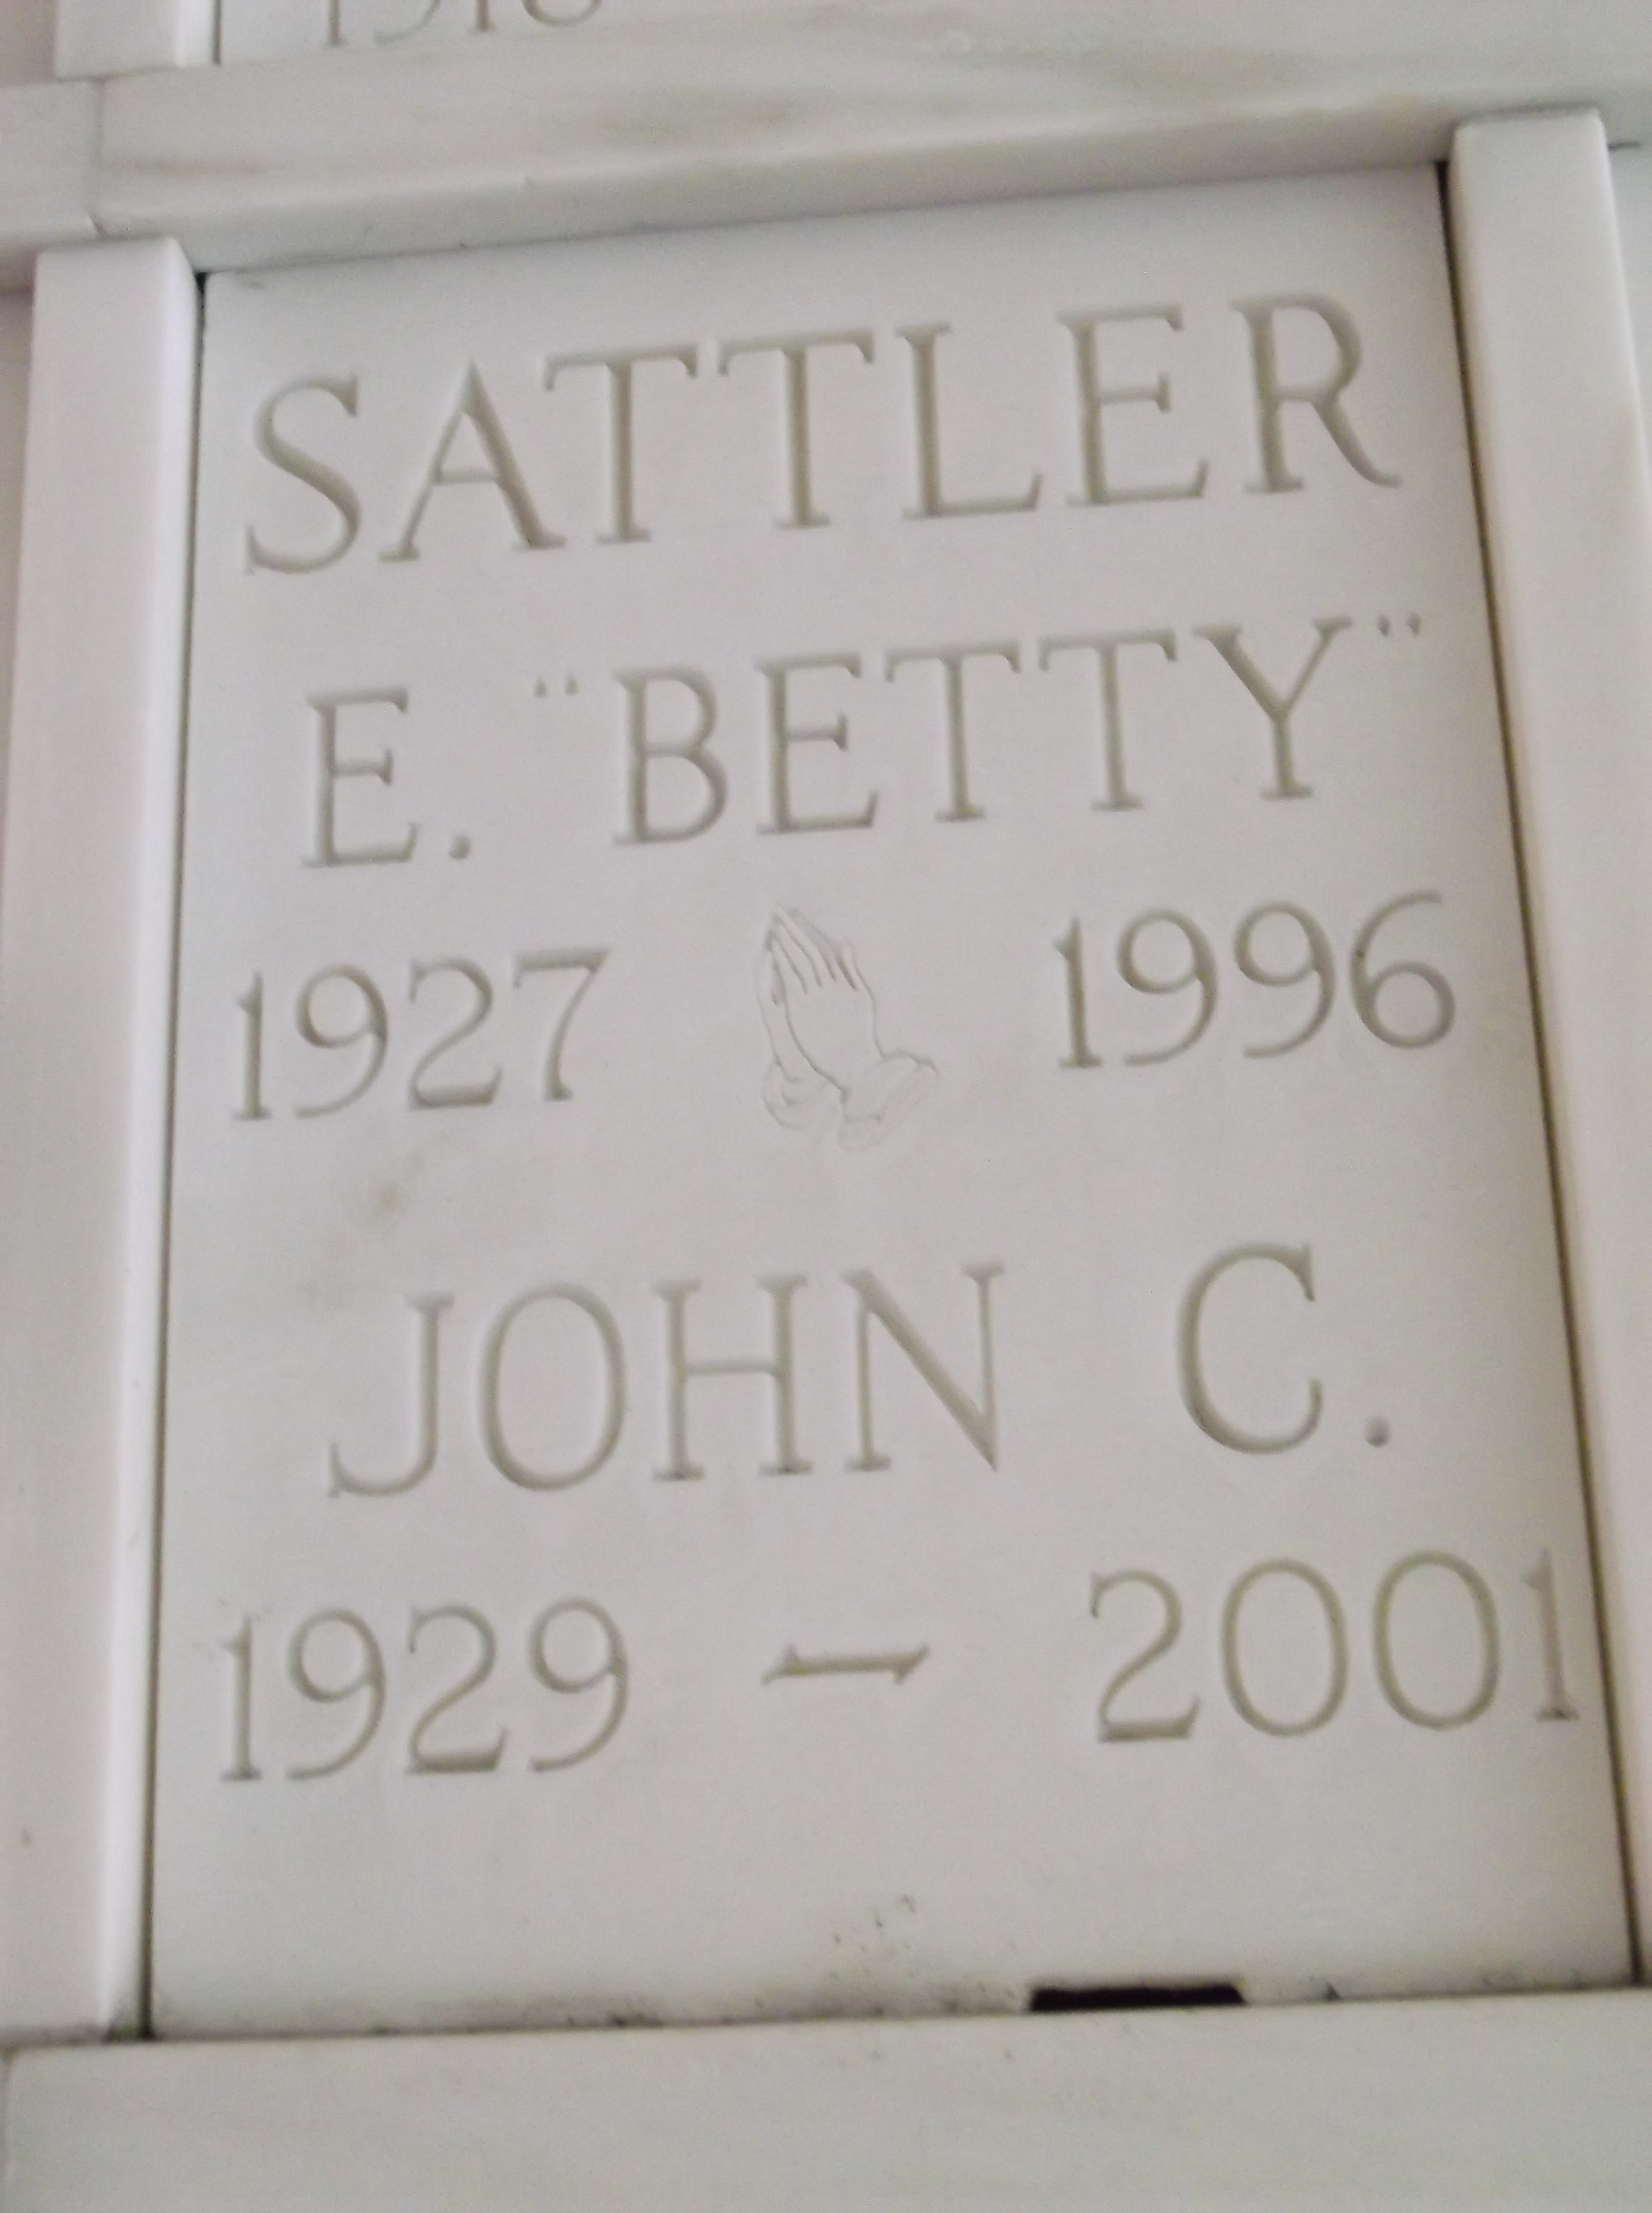 John C Sattler